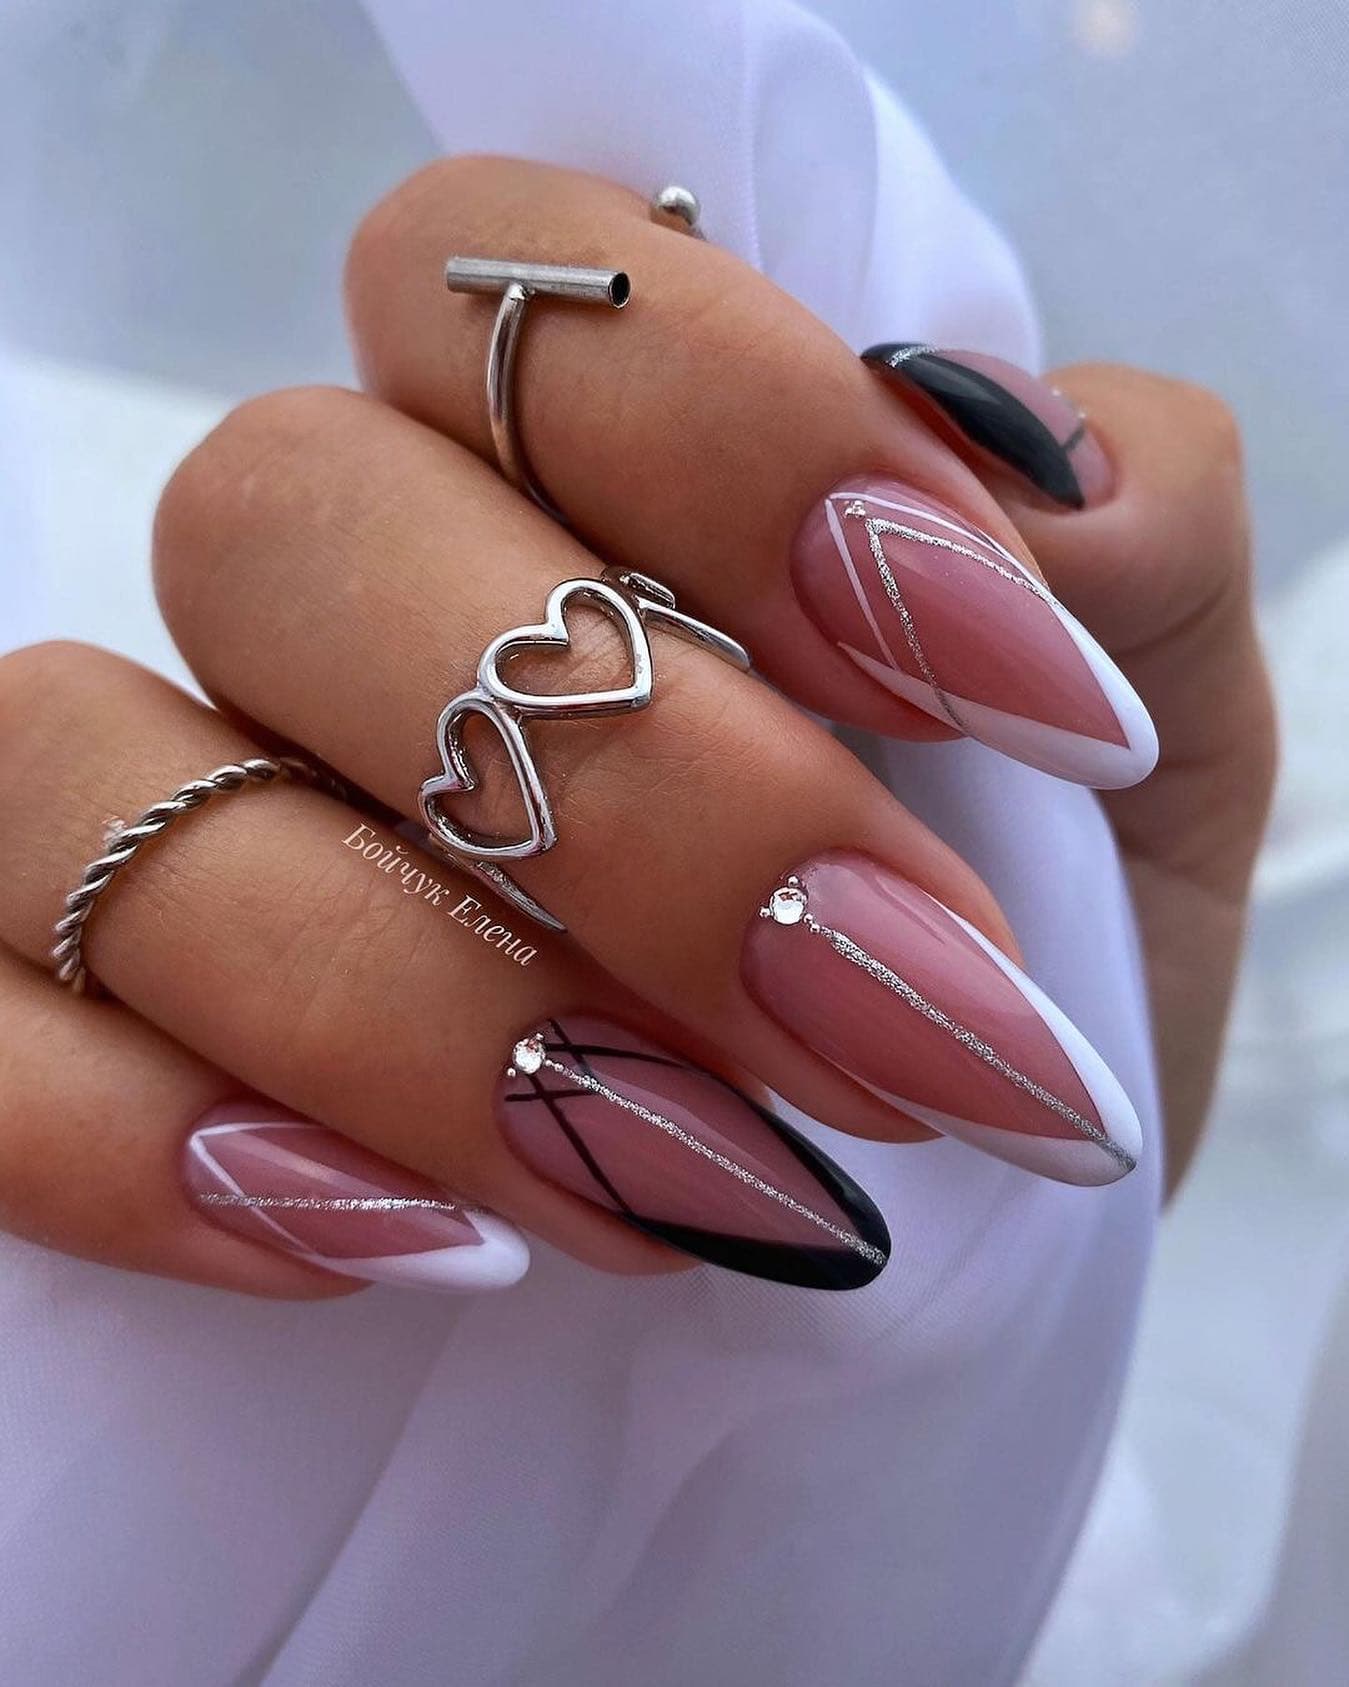 Hot Pink Nails Photo №180